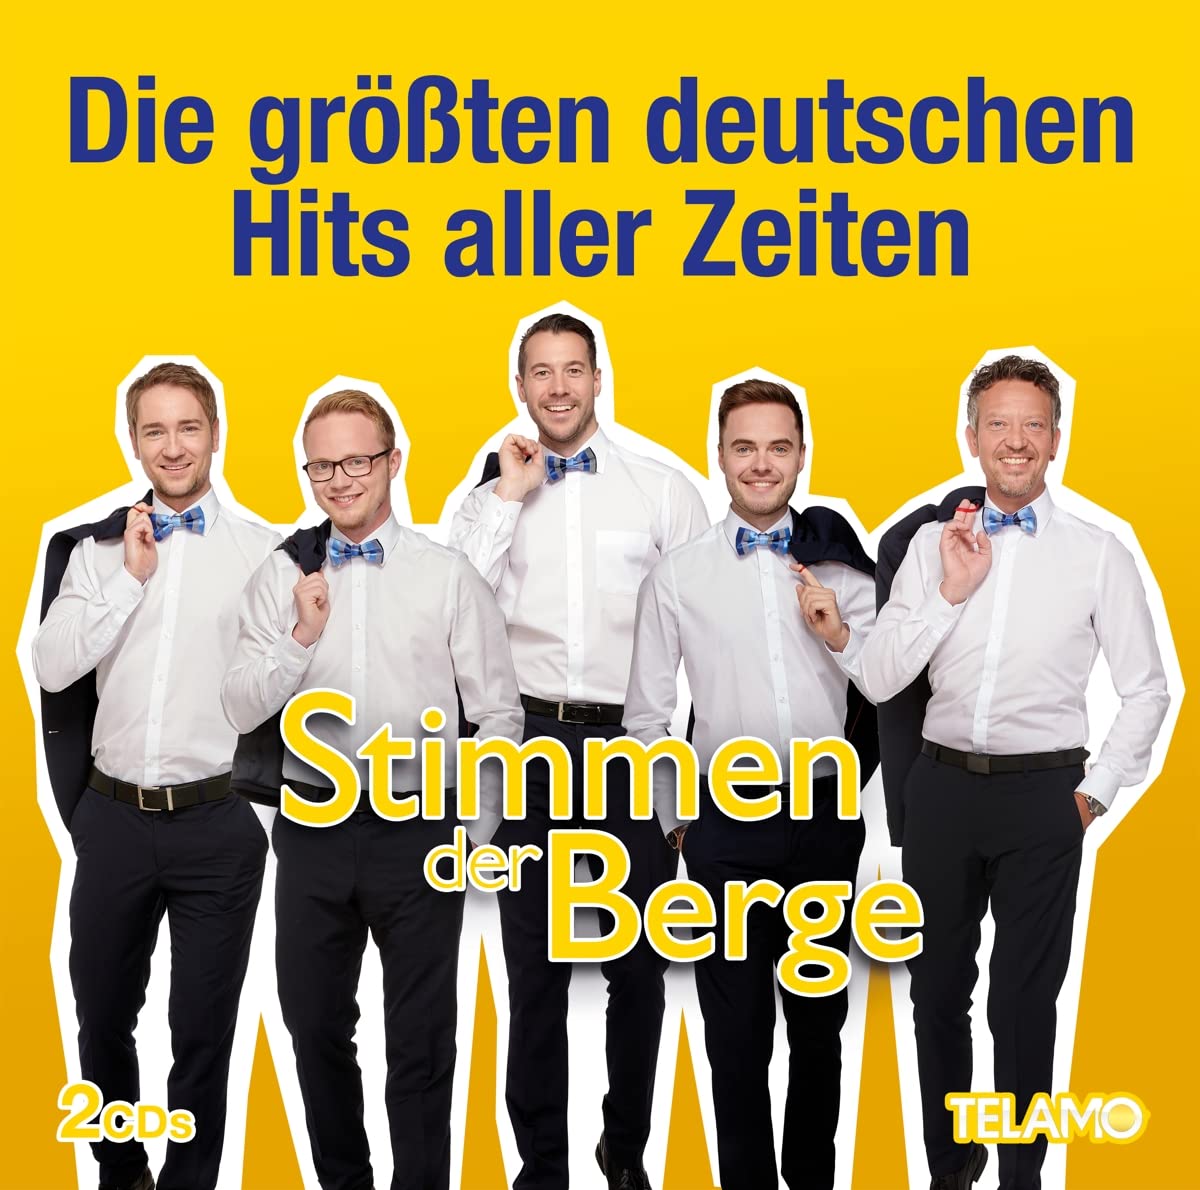 Die größten deutschen Hits aller Zeiten - Stimmen der Berge